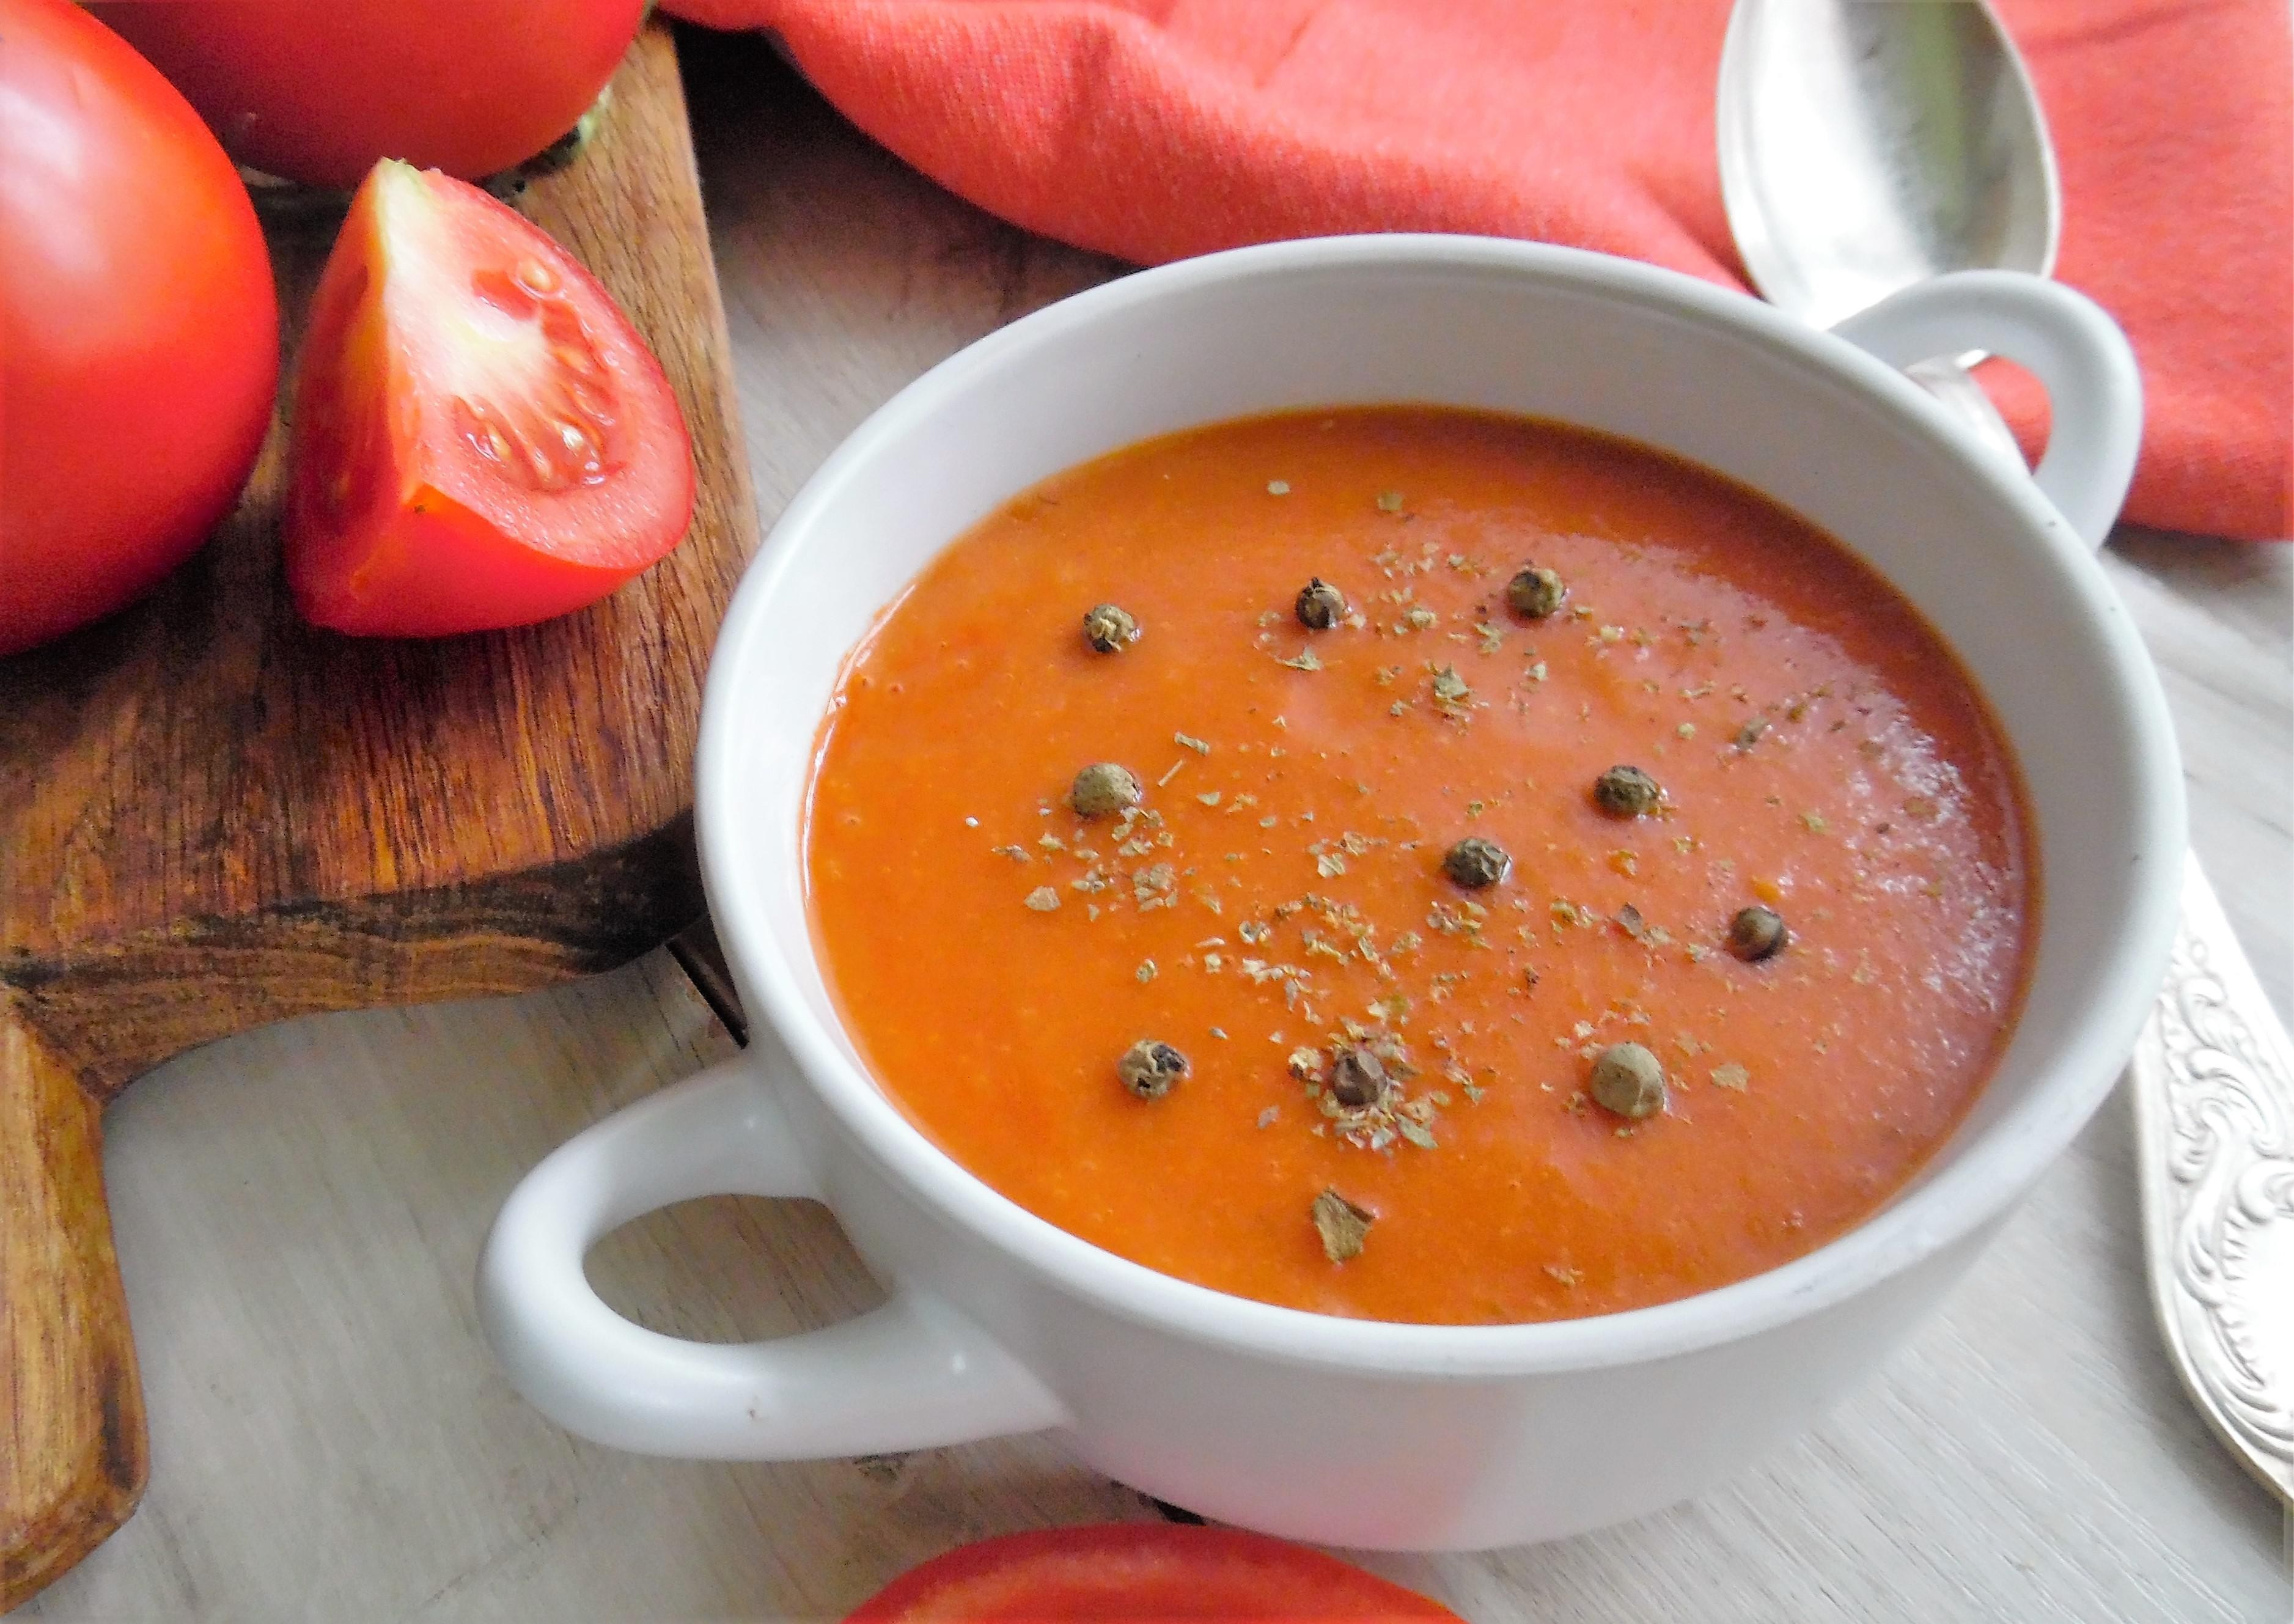 Wytrawna zupa pomidorowa na ostro